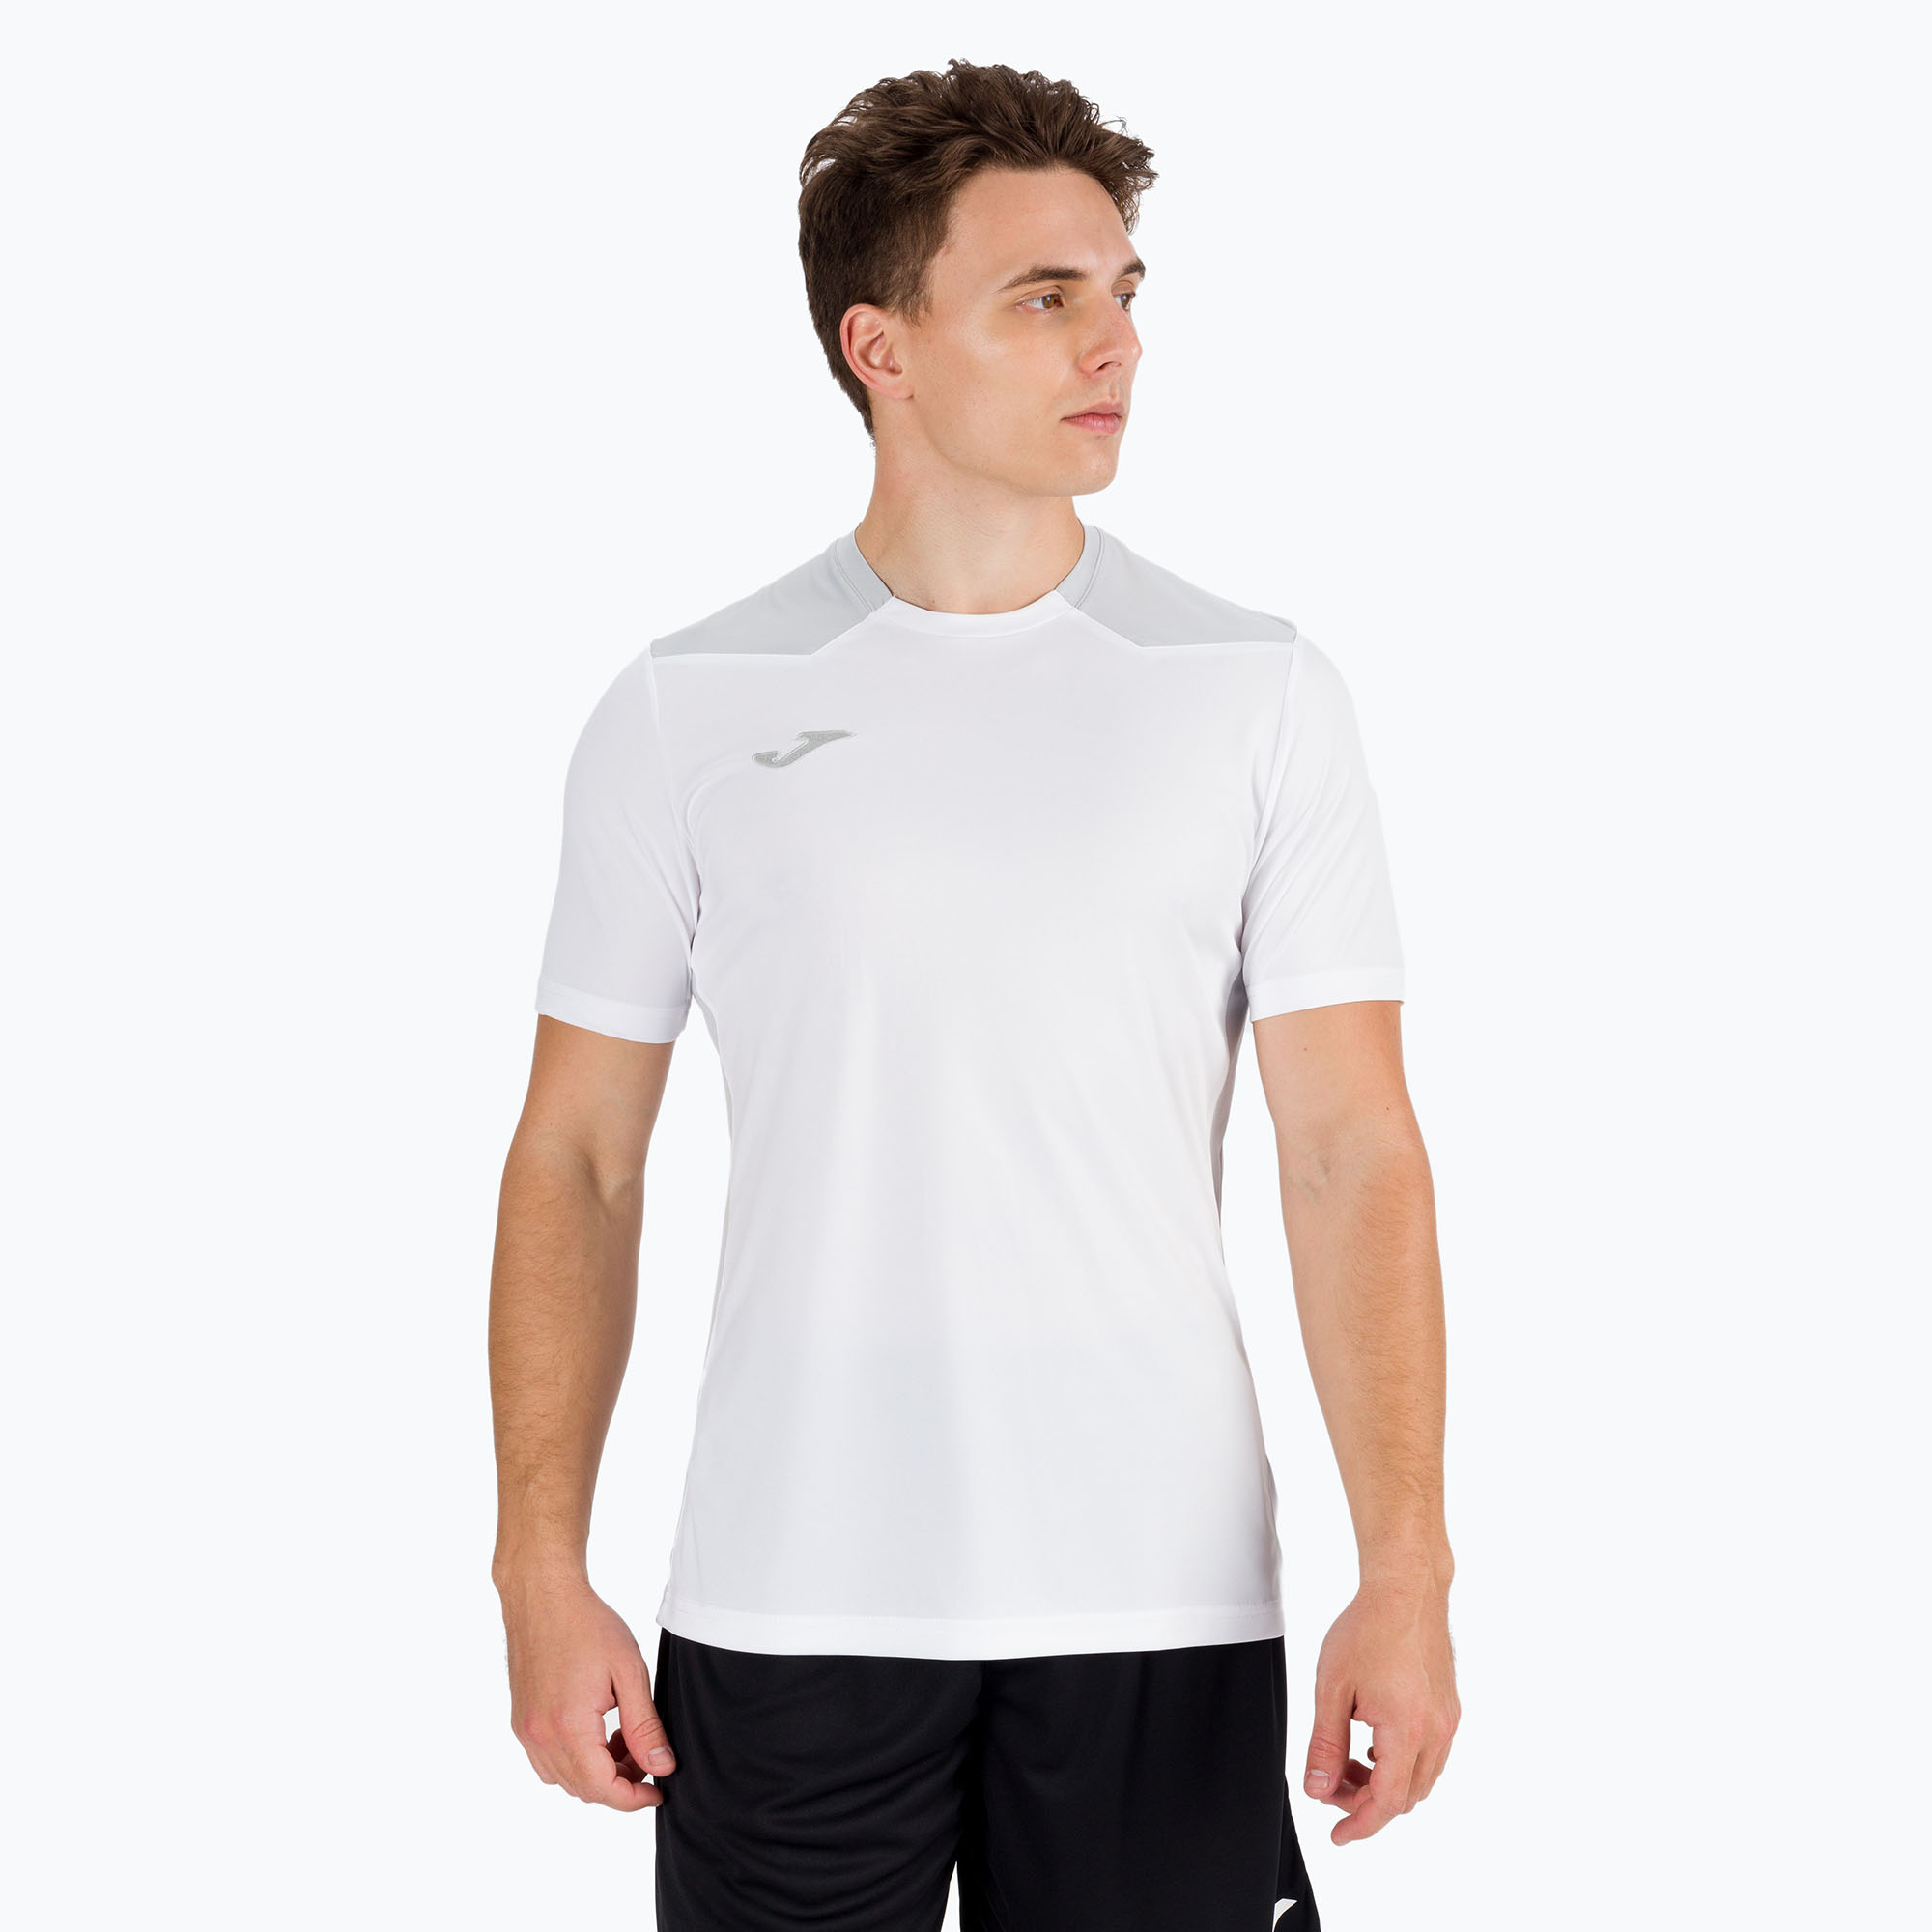 Joma Championship VI pánske futbalové tričko biele/šedé 101822.211